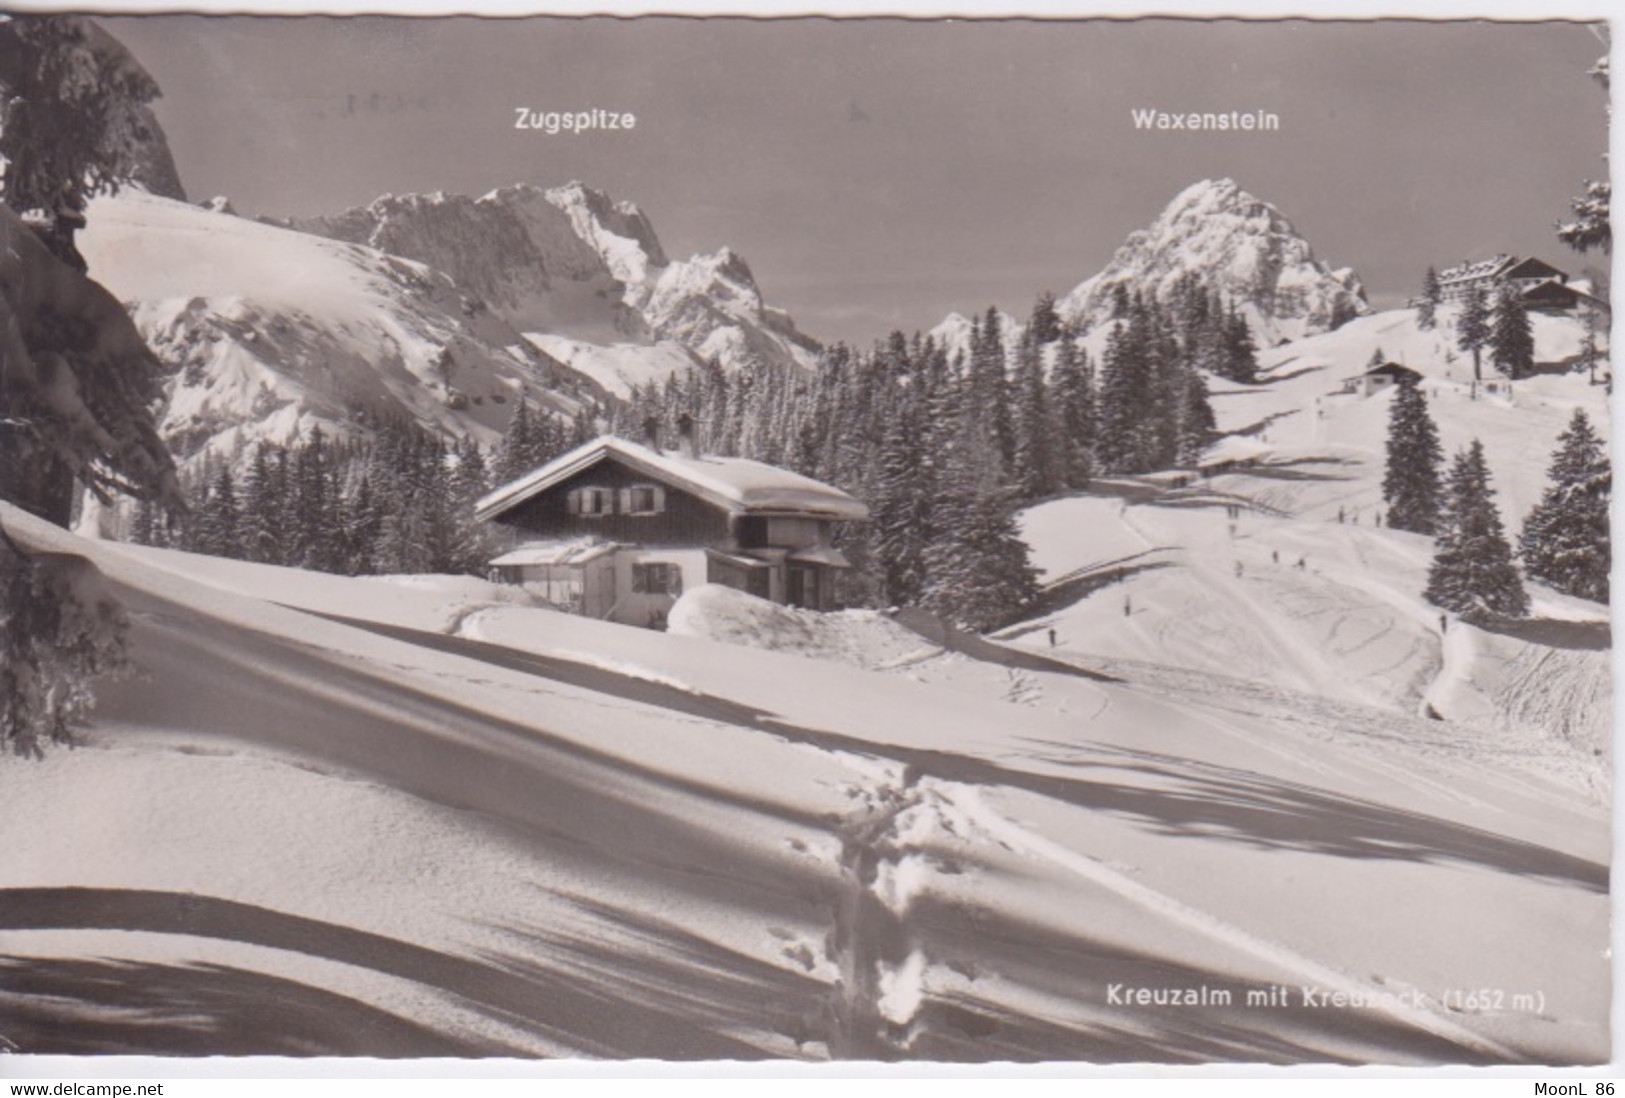 ALLEMAGNE - DEUTSCHLAND - Garmisch-Partenkirchen -  Zugspitze WAXENSTEIN - KREUZALM MIT KREUZECK - 1955 DEUTSCHE POST - Rhoen